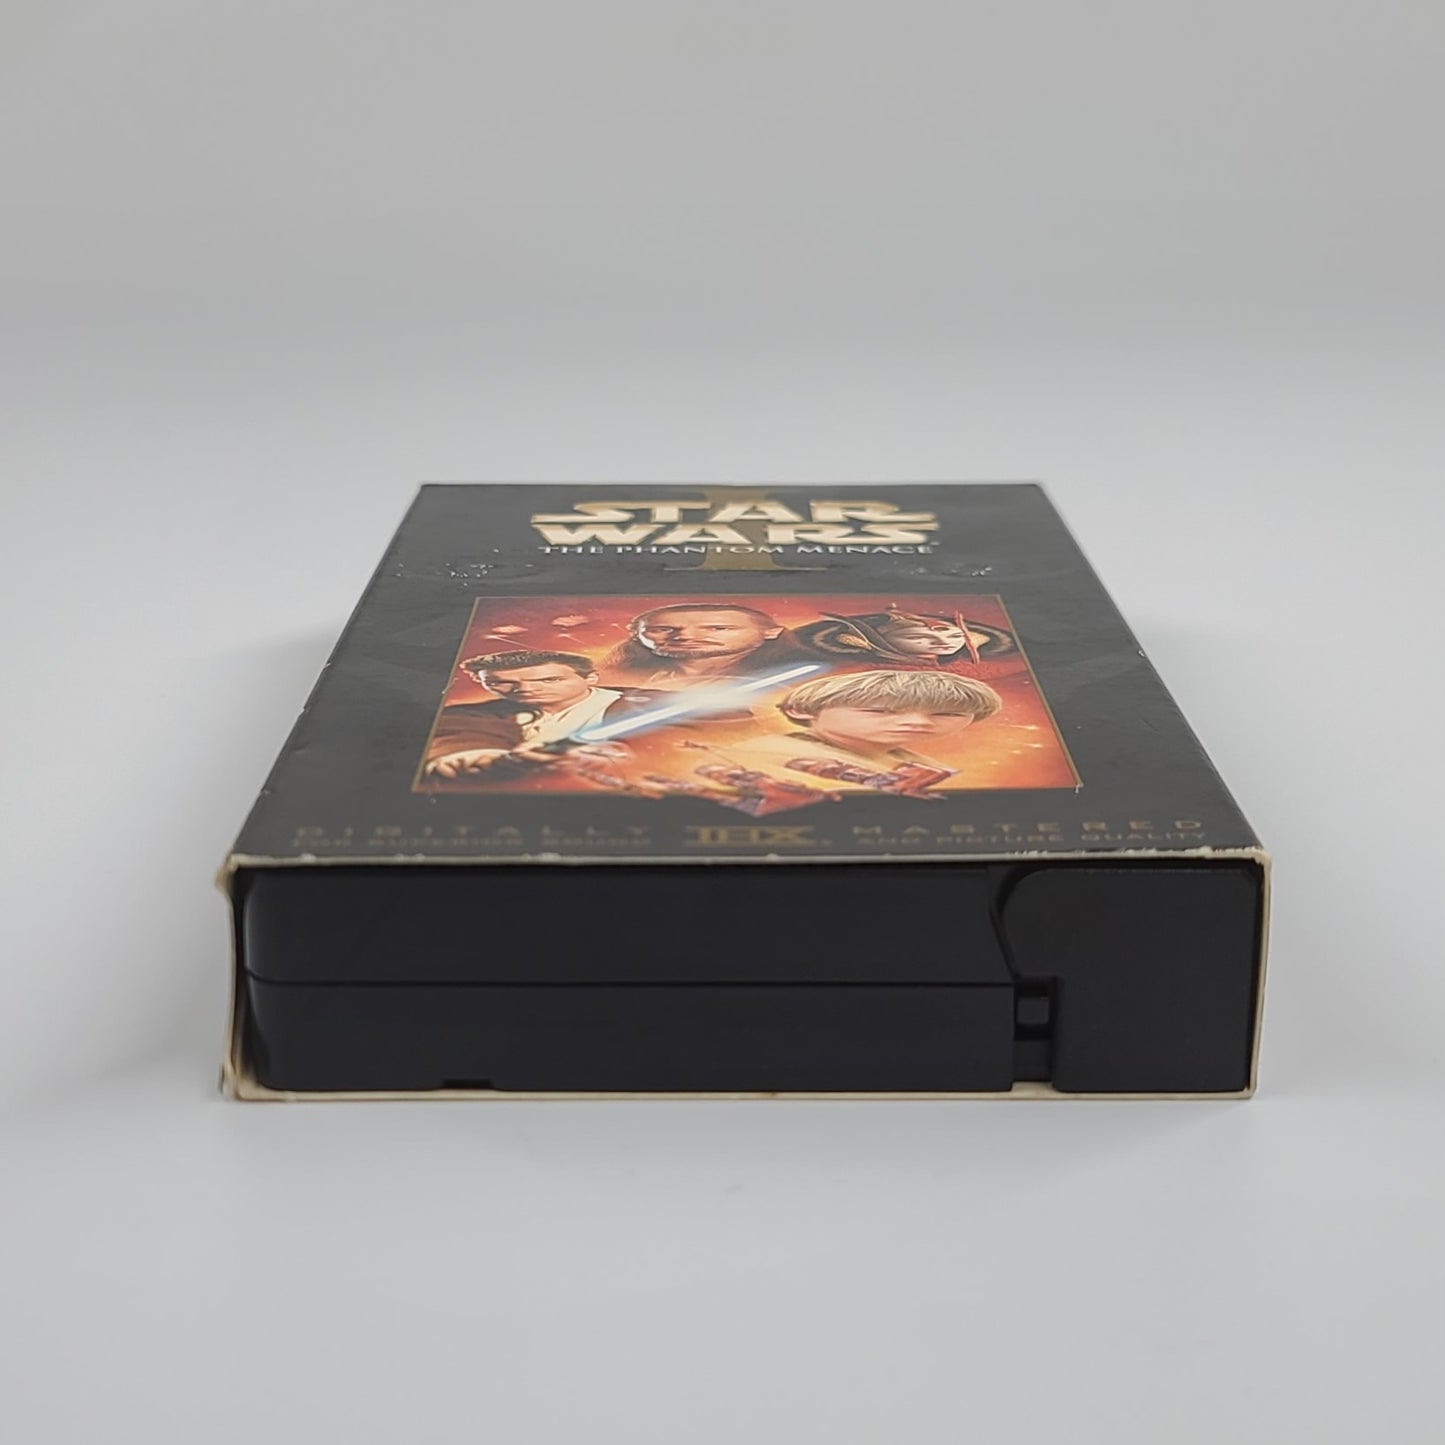 'Star Wars: The Phantom Menace' VHS